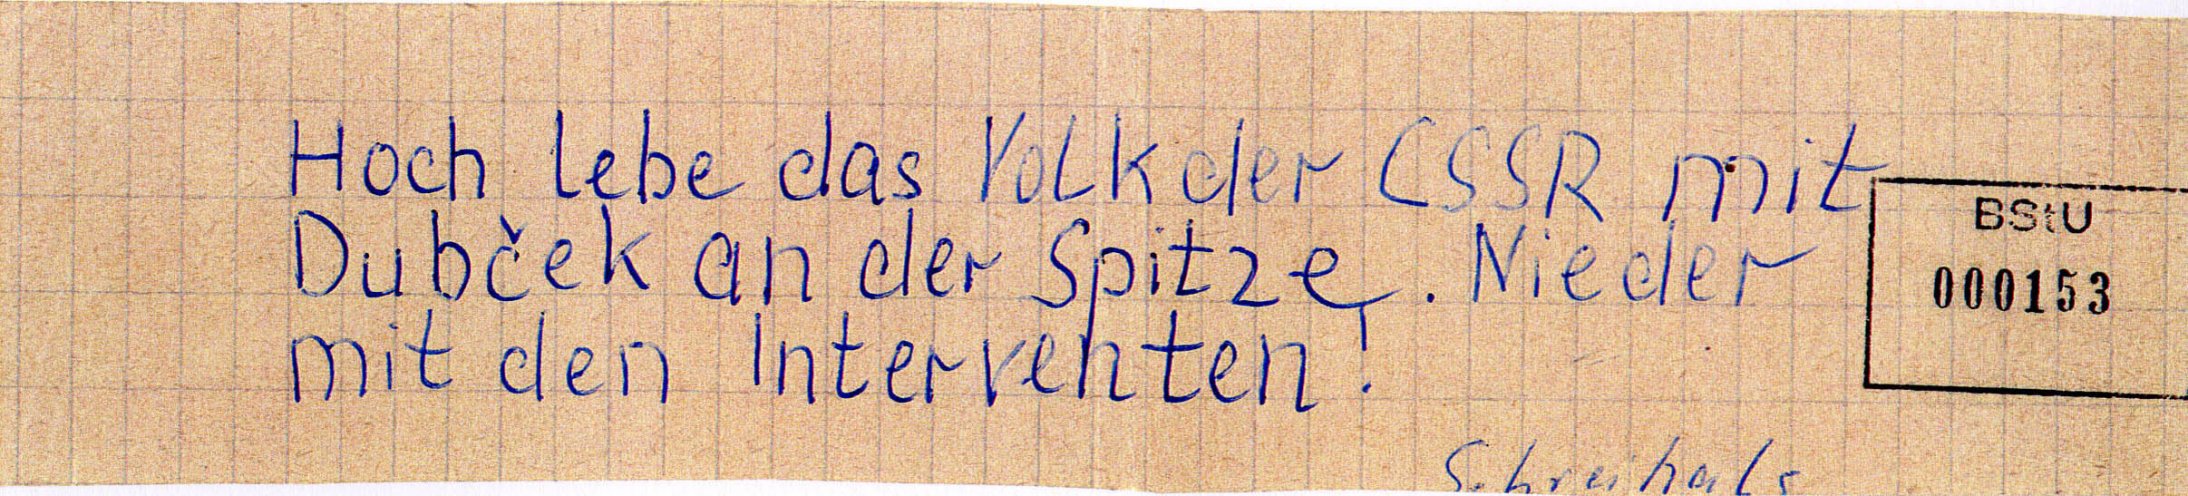 In Schwerin schreibt ein 21-jähriger Flugblätter gegen den Einmarsch der Warschauer-Pakt-Truppen in die CSSR und verteilt diese in Hausbriefkästen in seiner Wohngegend. Quelle: BStU, MfS, BV Schwerin, AU 11/69, GA Bd. 3, Bl. 153, Seite 7 von 10